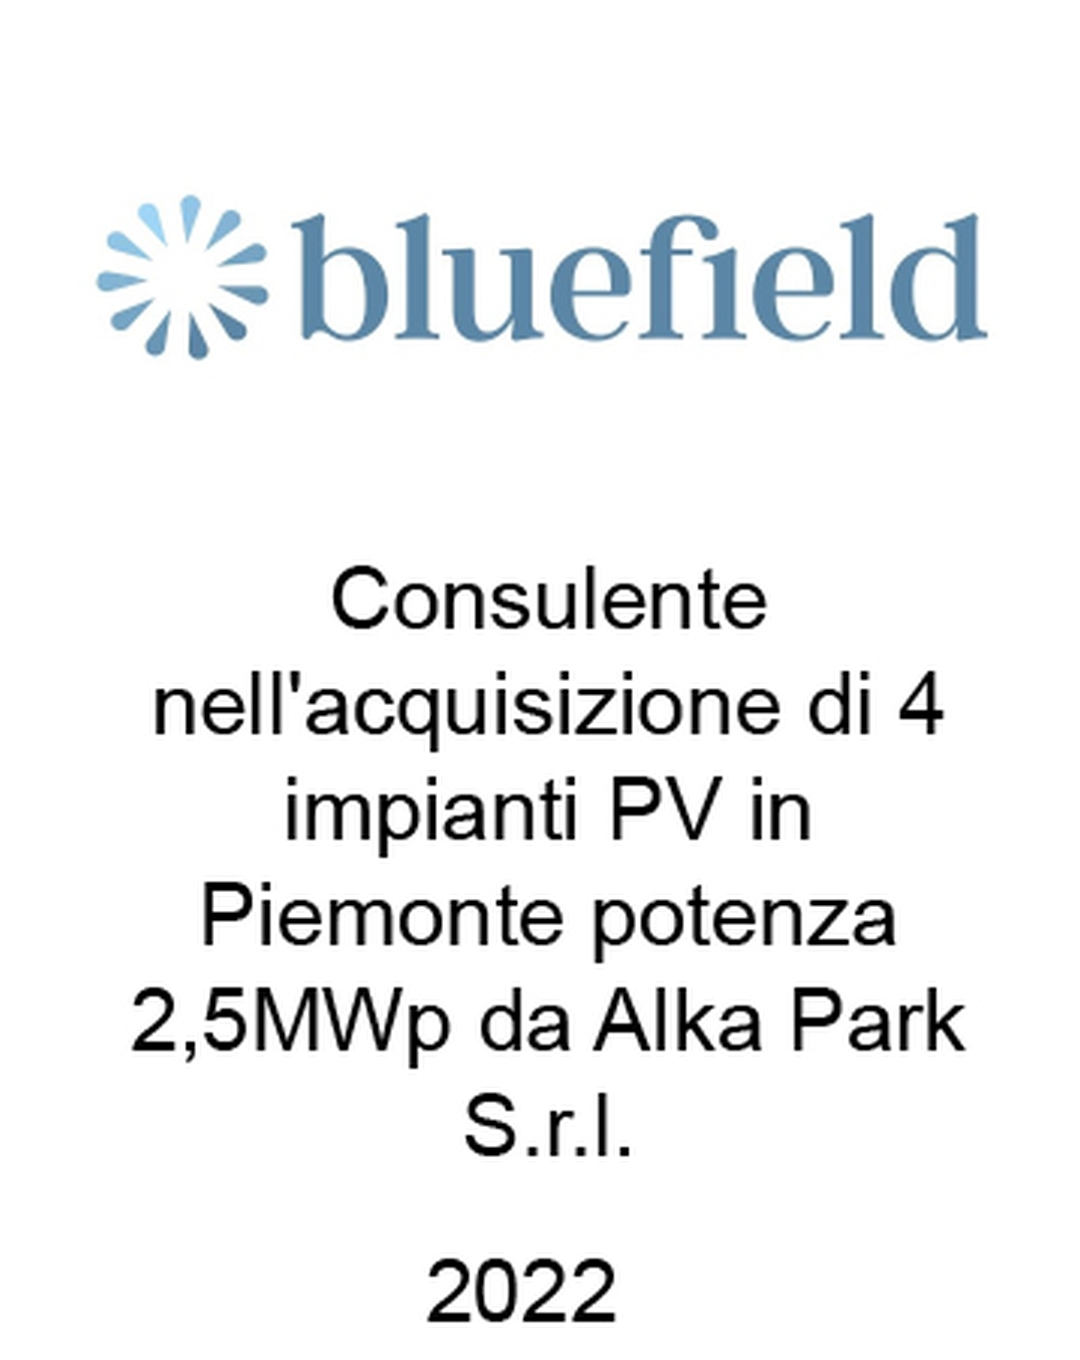 onsulente di Bluefield Partners LLP nell'acquisizione da Alka Park S.r.l. di 4 impianti fotovoltaici in Piemonte con una potenza complessiva di 2,5 MW. Ha agito in qualità di consulente dell'Acquirente. Incarico completato nel 2022